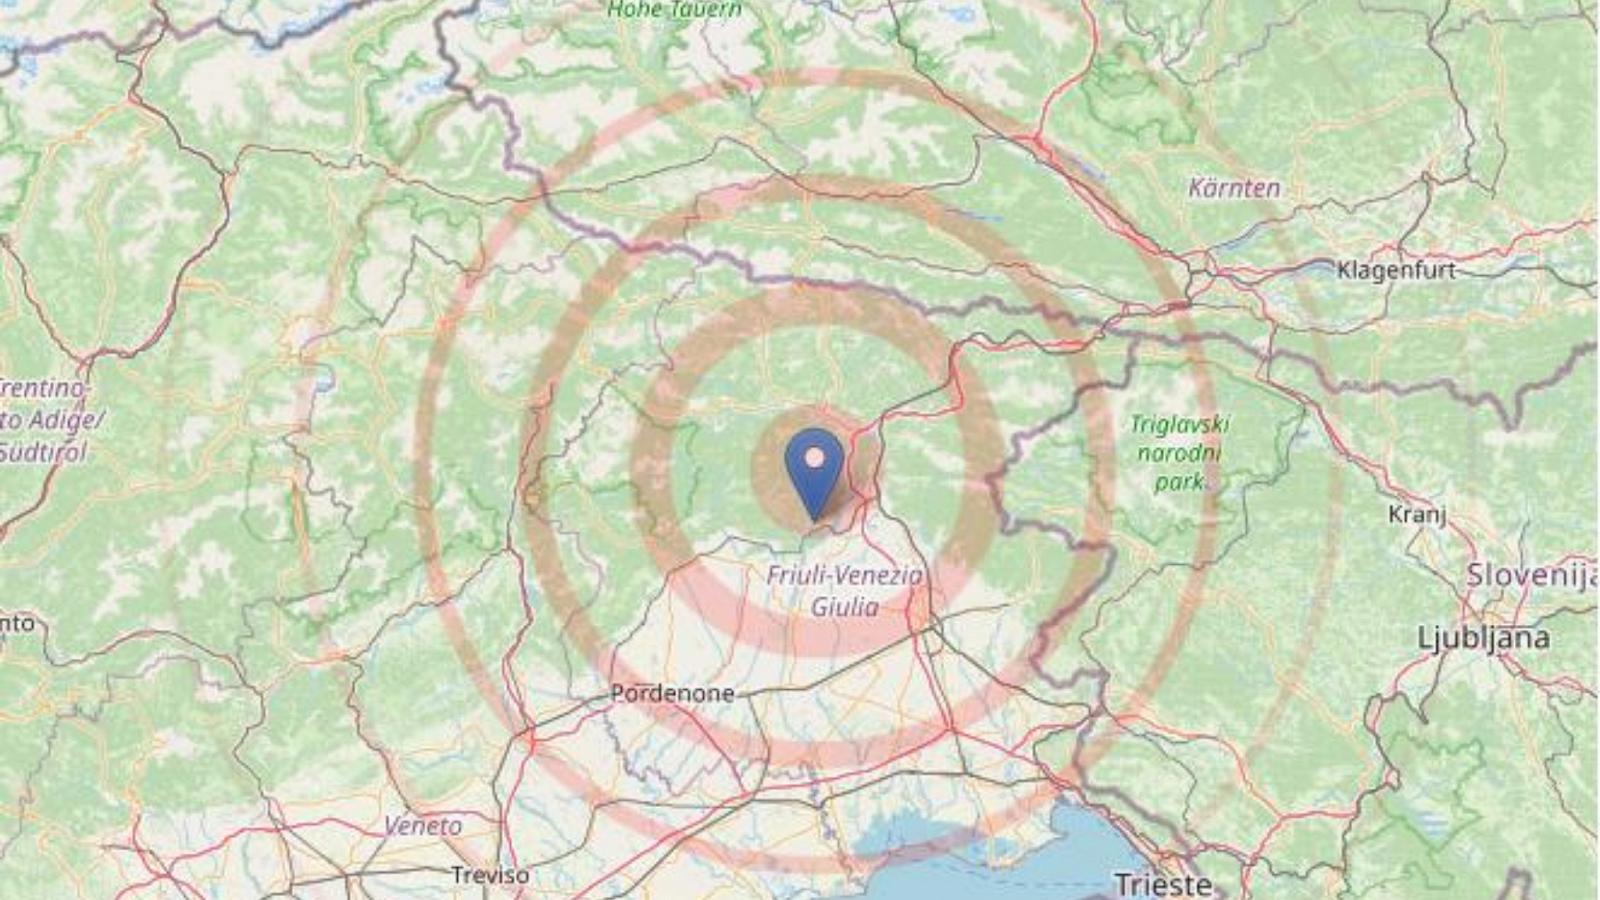 Scossa di terremoto di magnitudo 4.1 in Friuli Venezia Giulia, nessun ferito